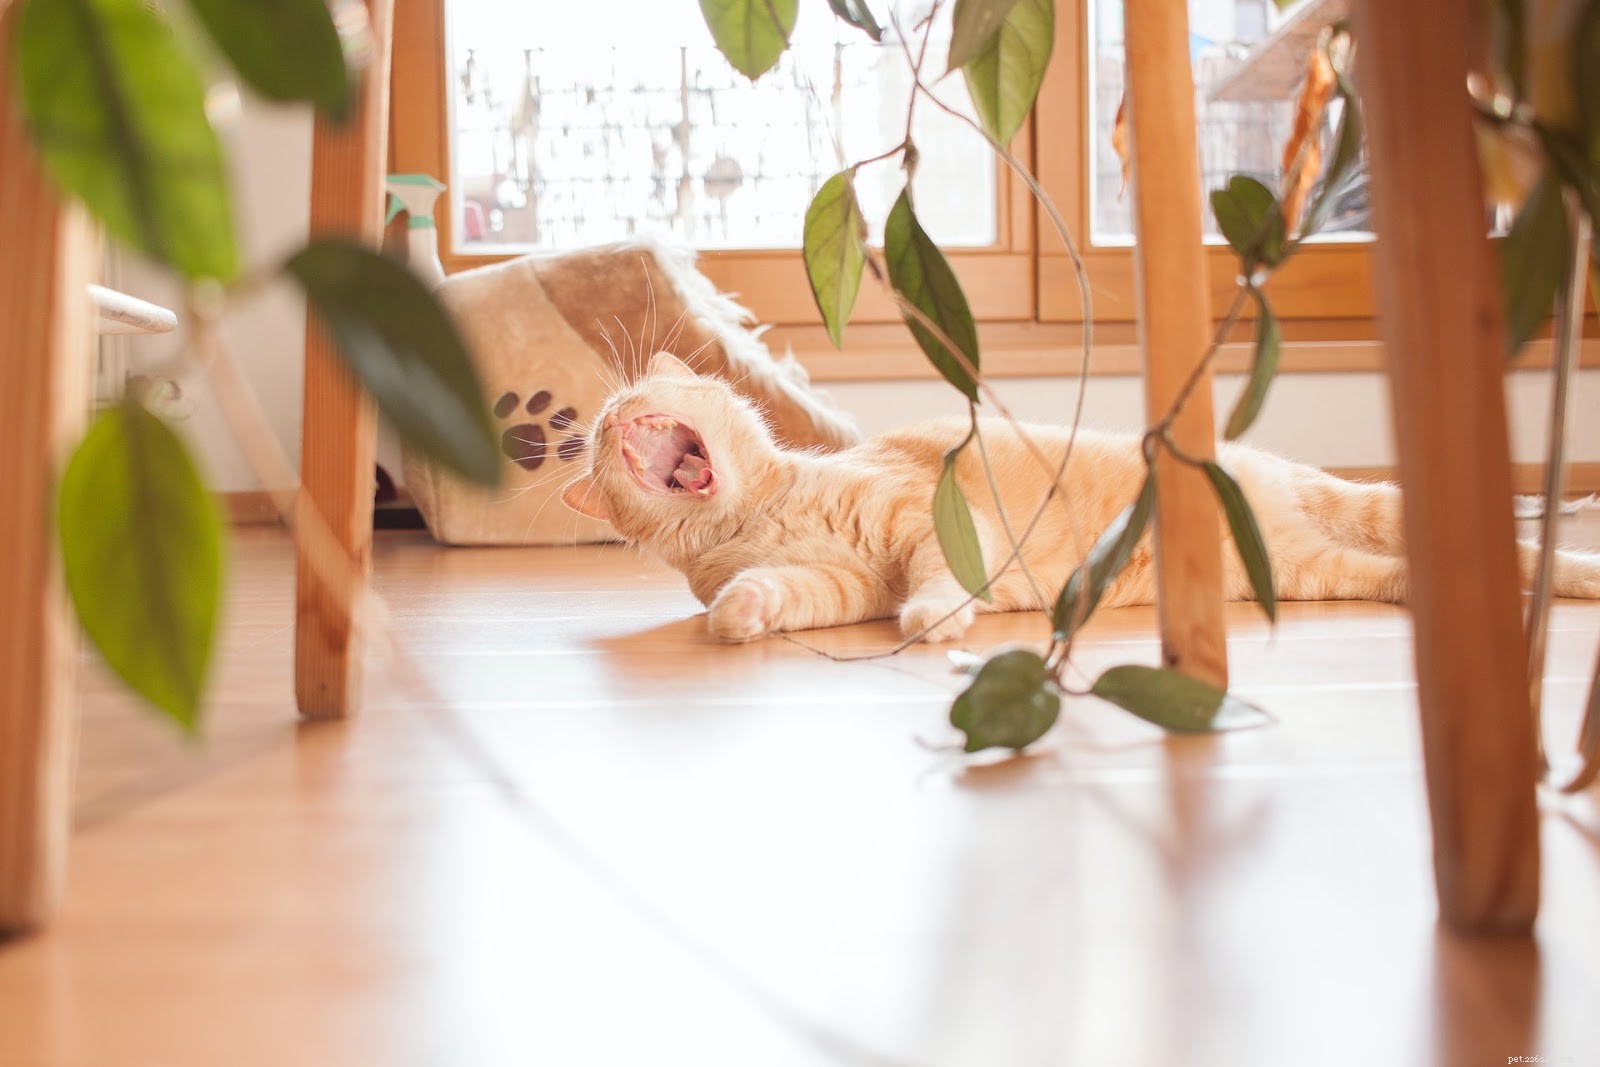 Come possedere un gatto in un appartamento:una guida per i proprietari di gatti urbani